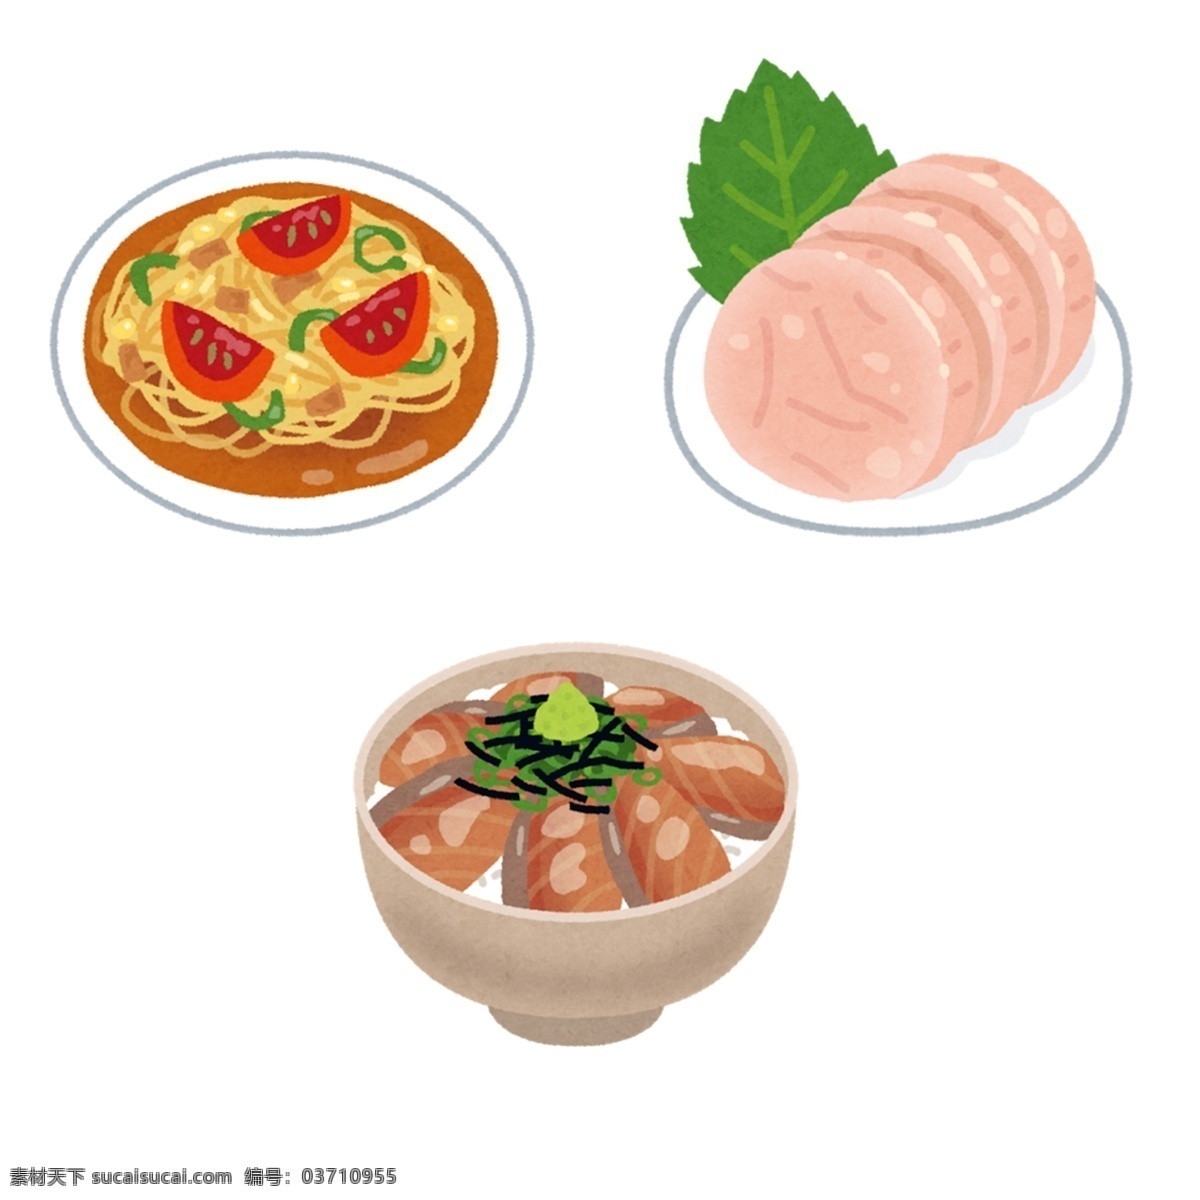 日本 水彩 手绘 食物 图标 设计素材 日本水彩 手绘食物